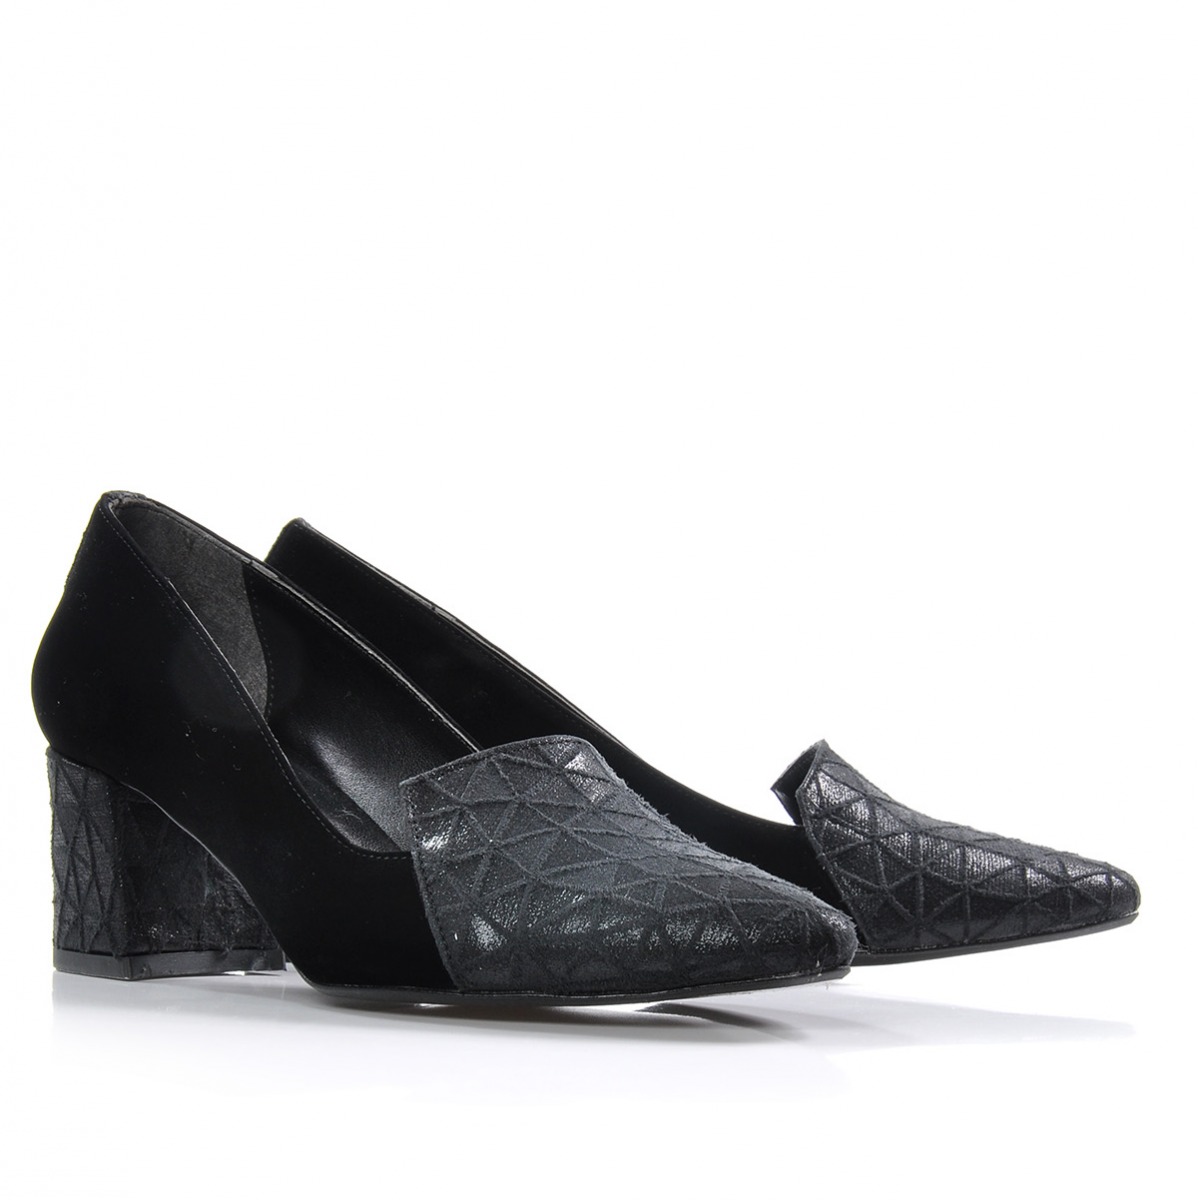 Flo Kadın  Siyah Klasik Topuklu Ayakkabı VZN-333Y. 5